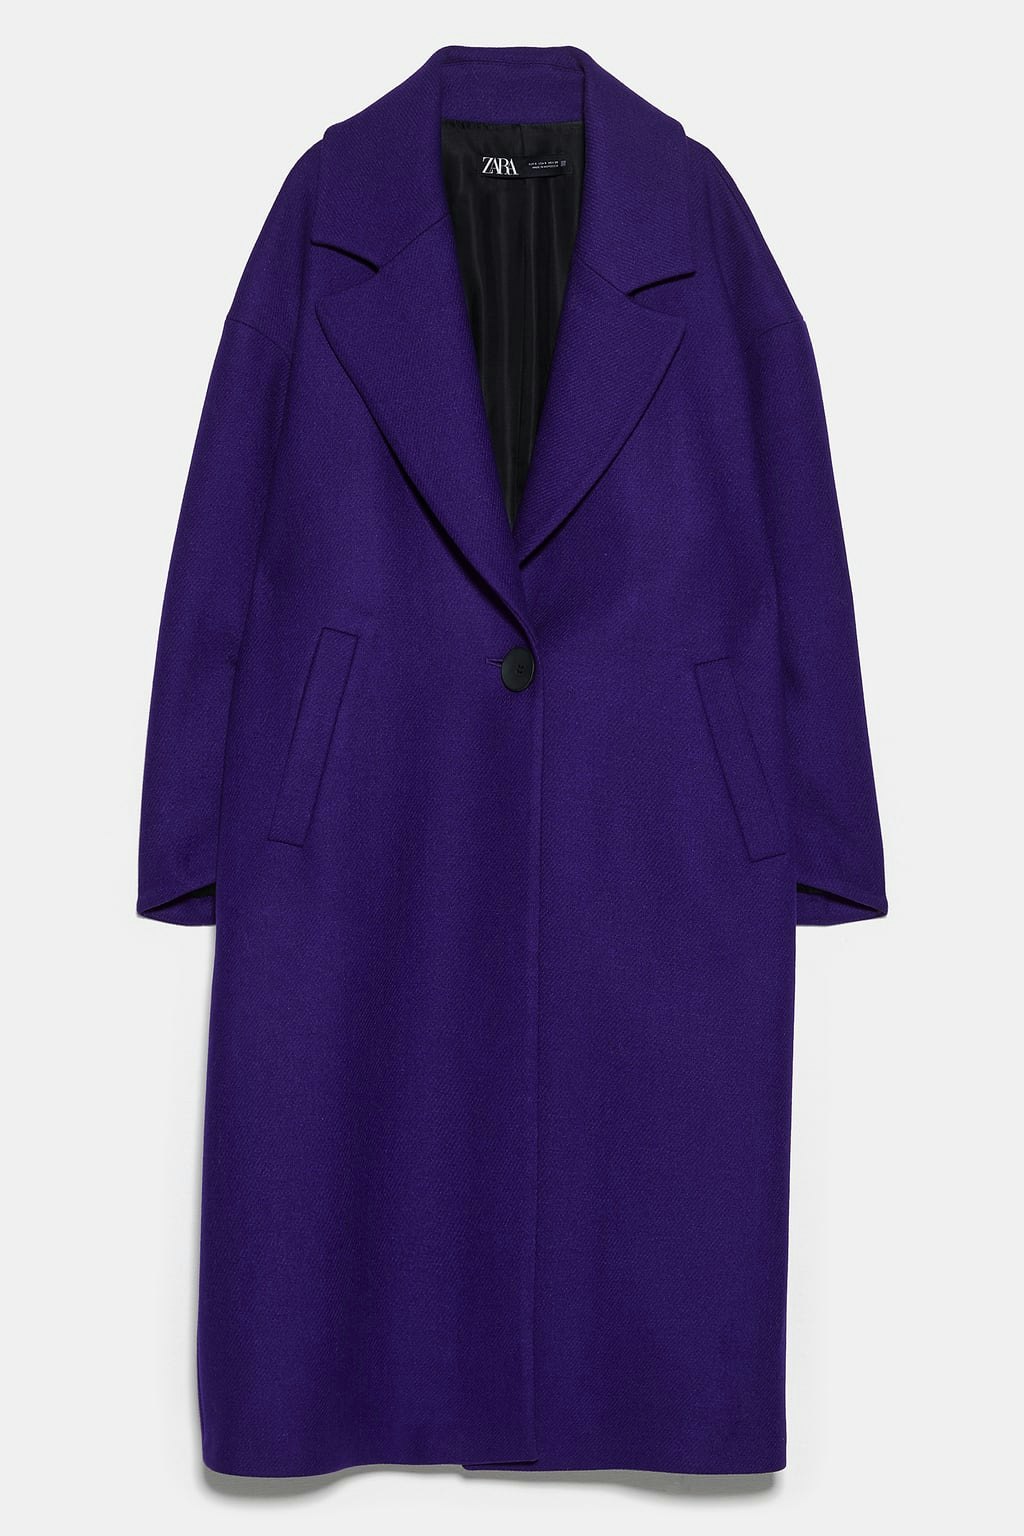 zara purple jacket